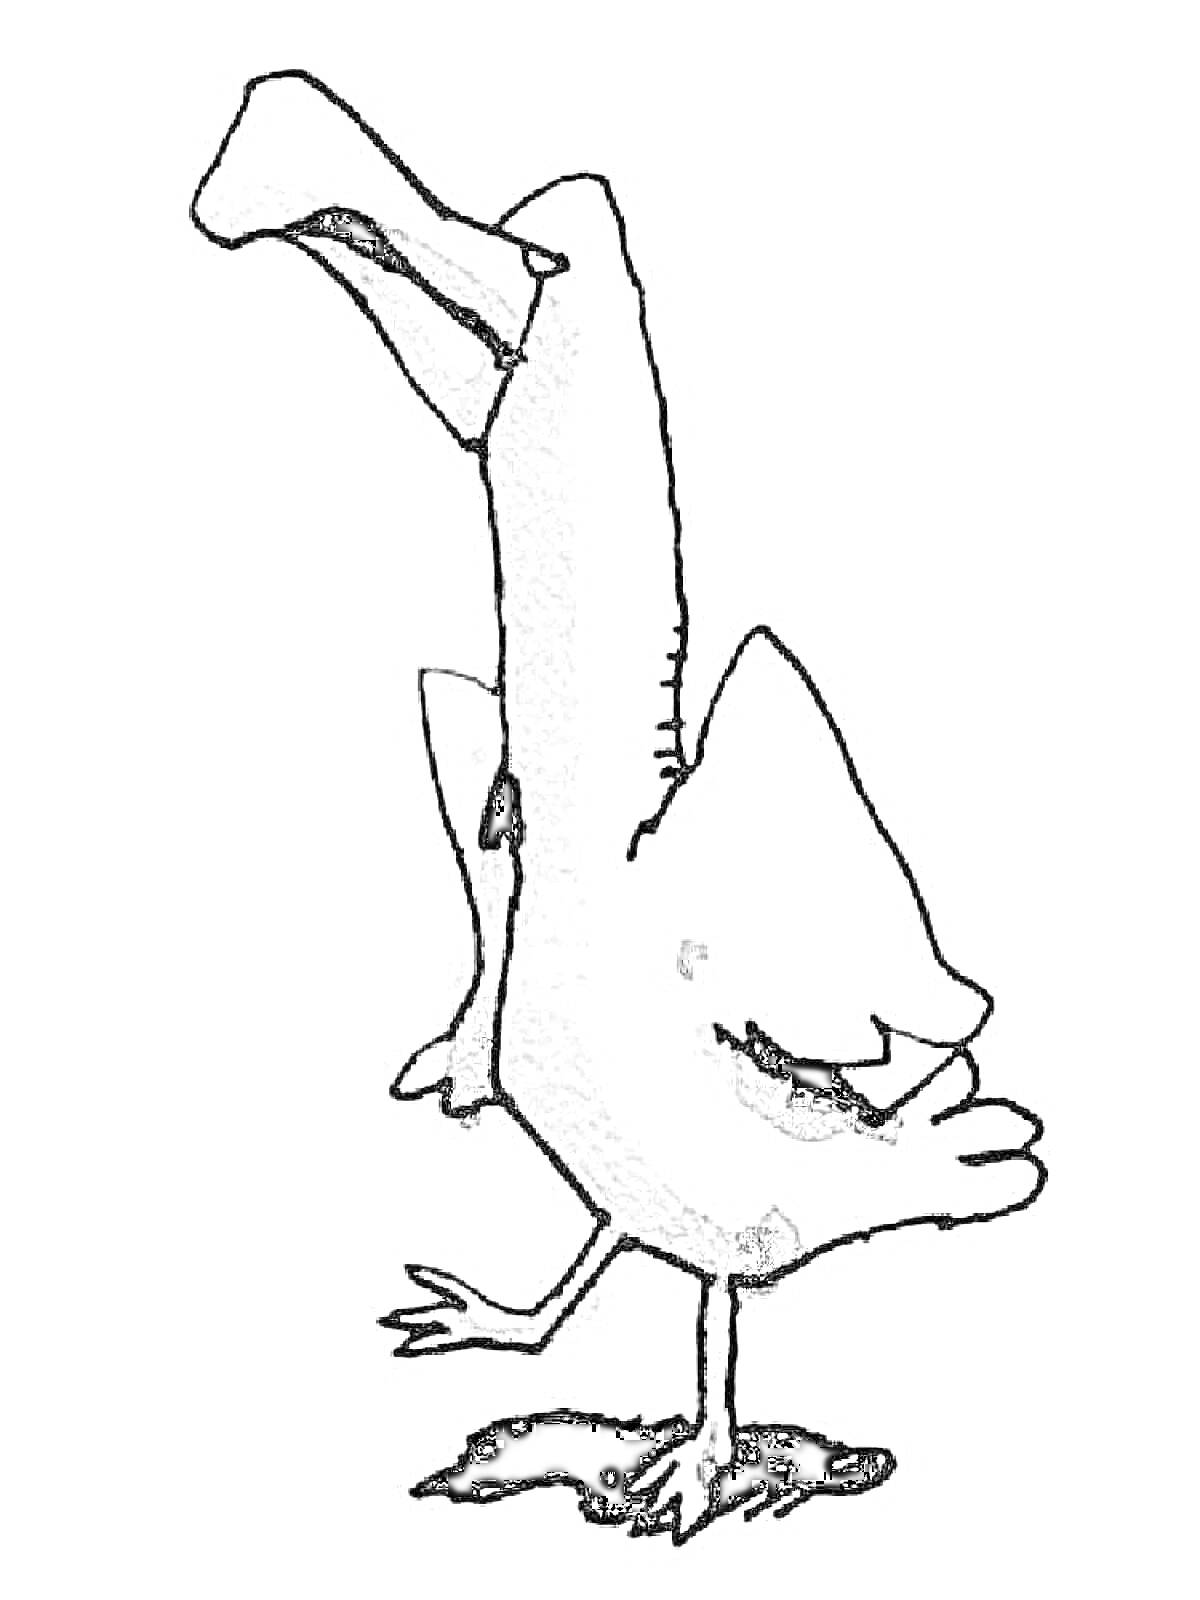 Альбатрос, стоящий на одной ноге с задранной вверх другой ногой.